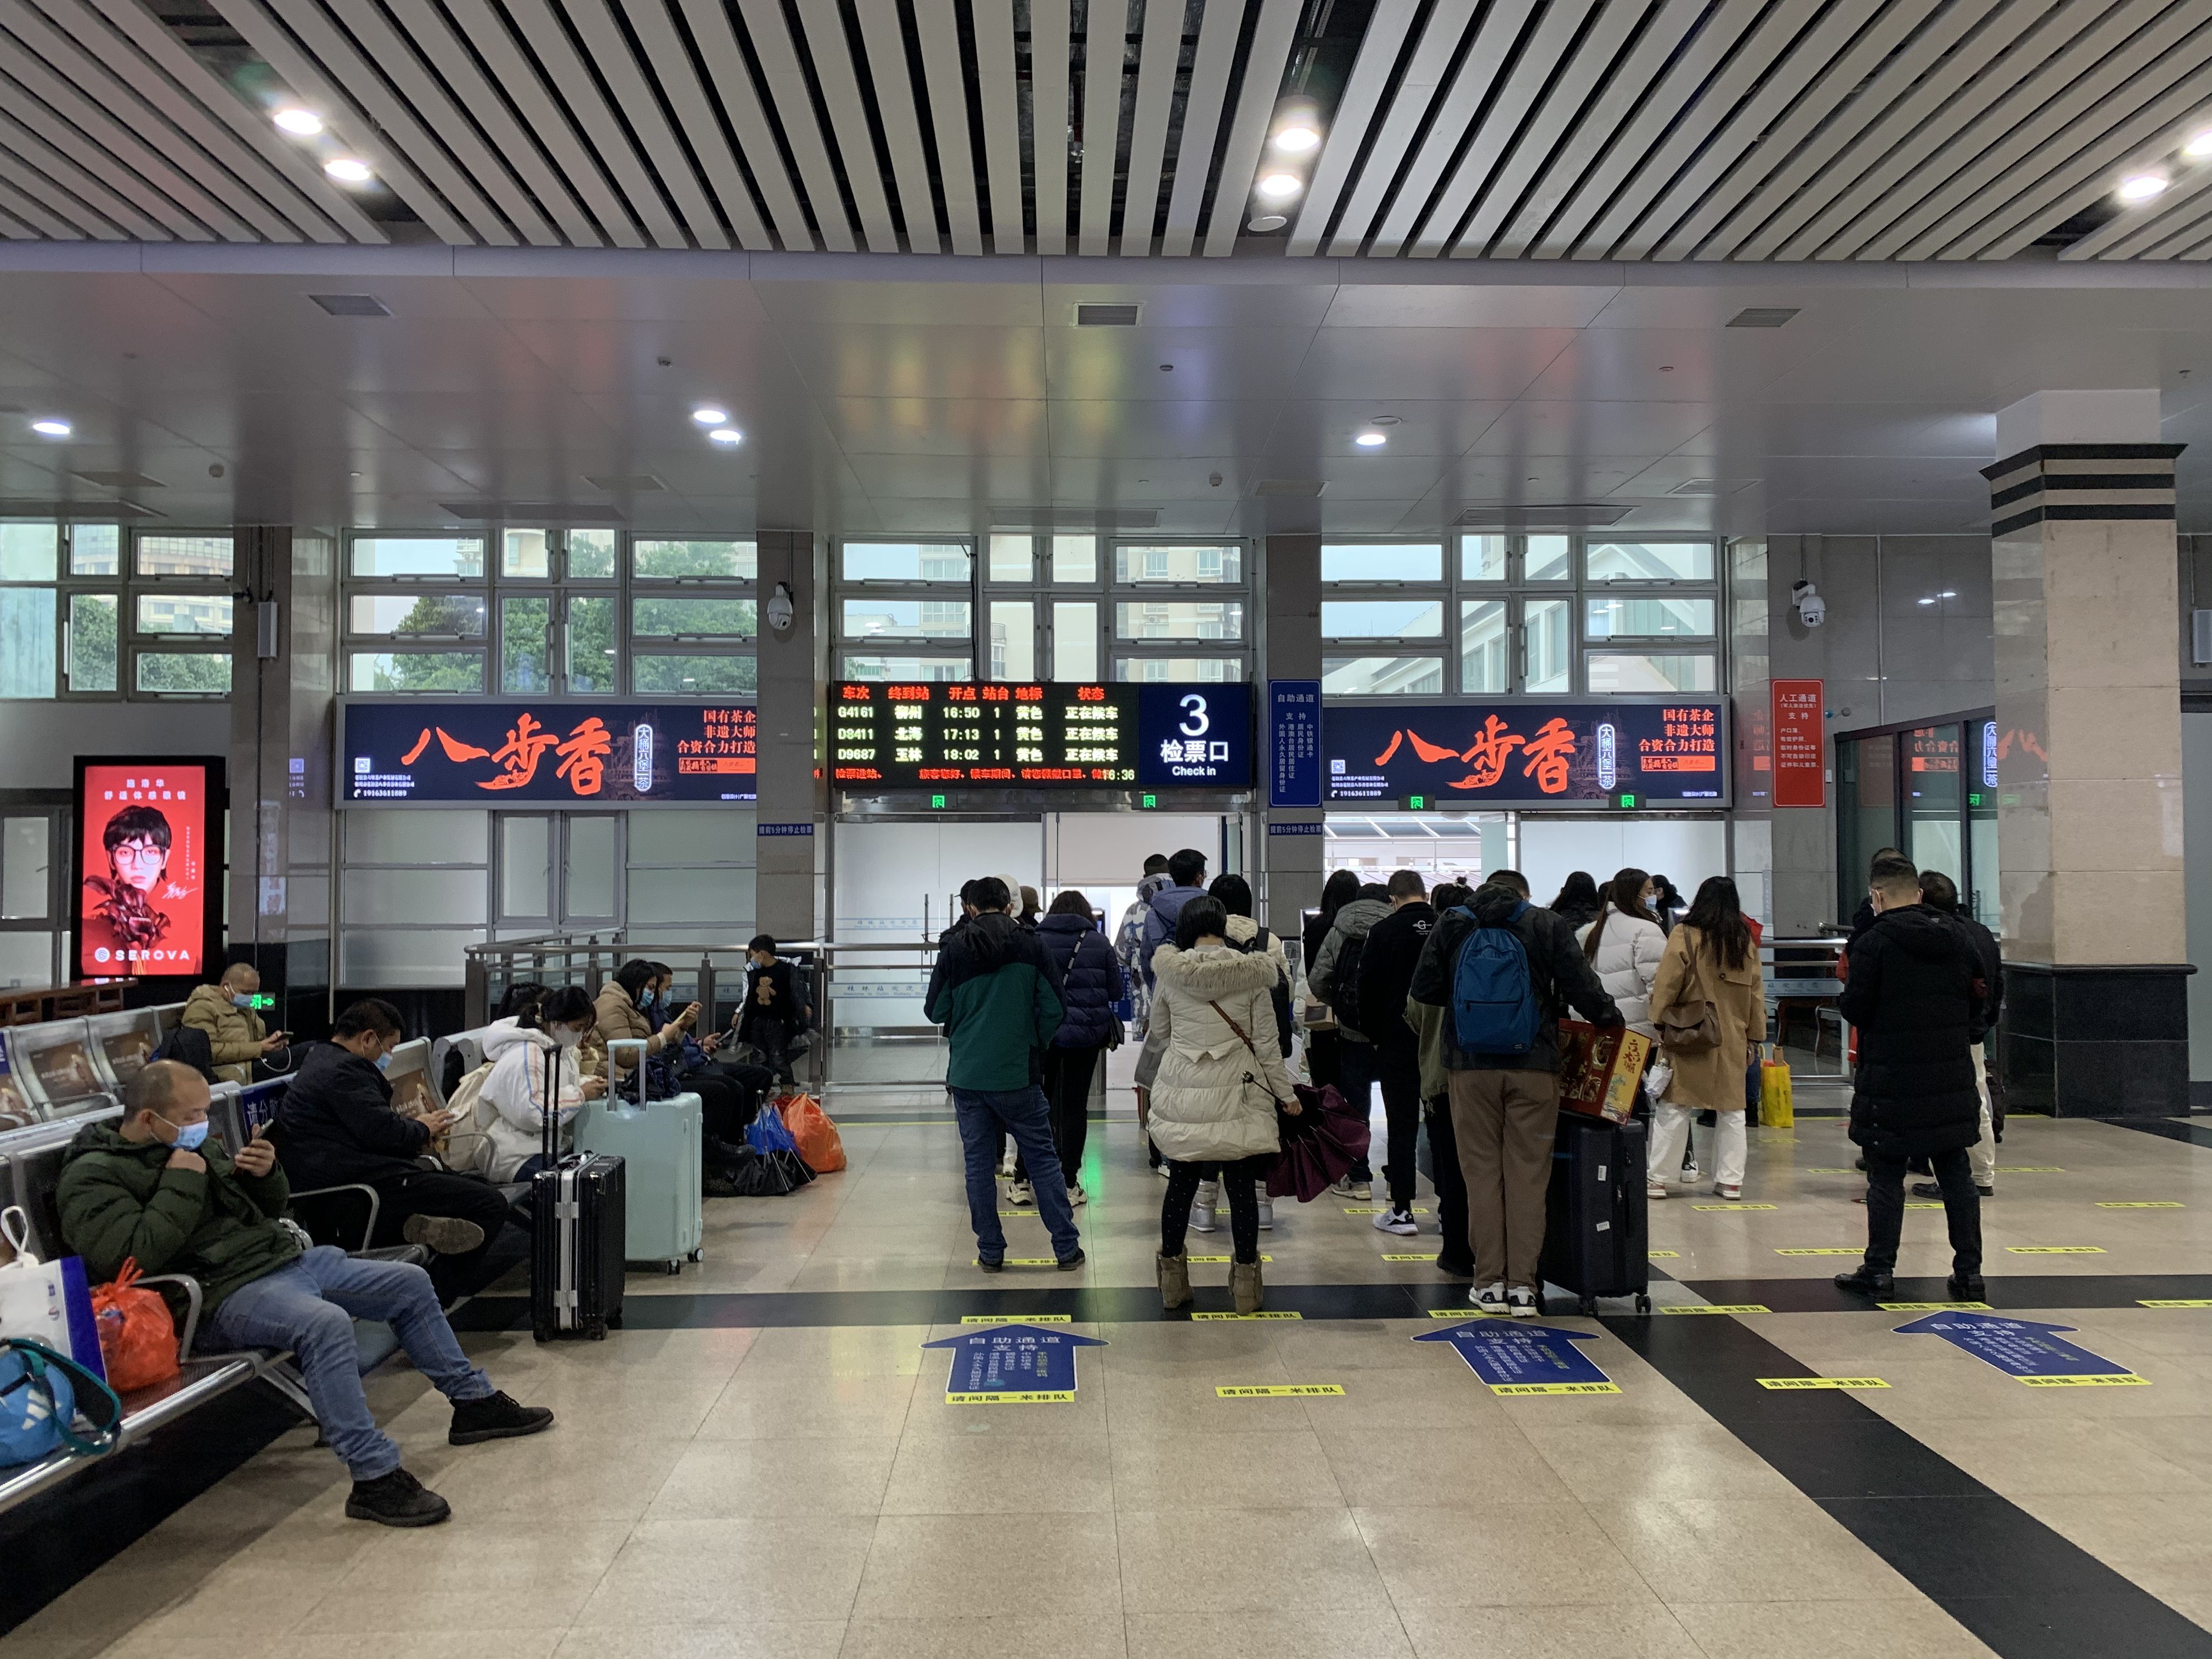 广西桂林桂林站二楼候车室第3检票口两侧火车高铁灯箱